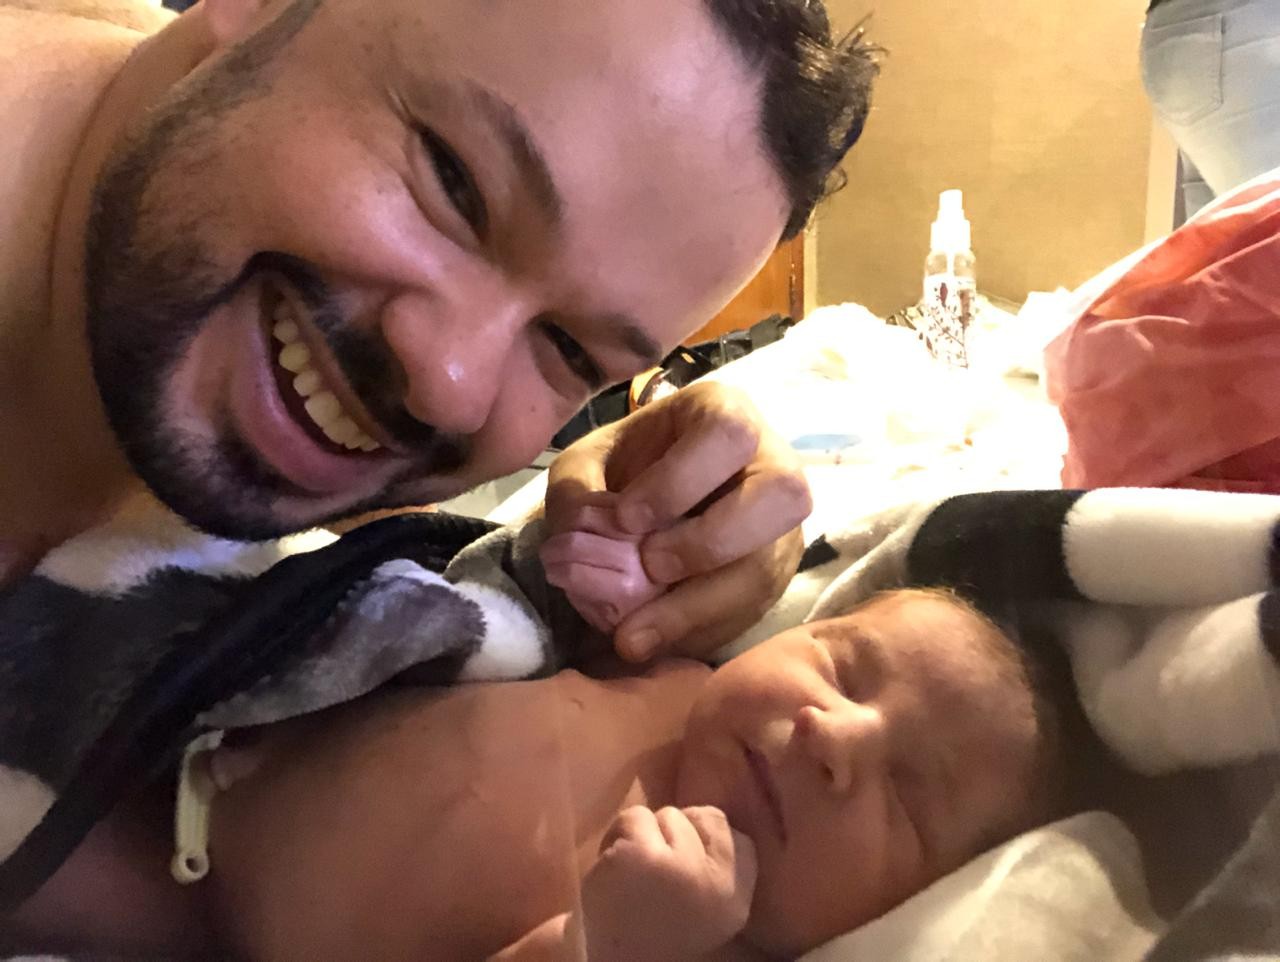 Vitor emocionado com o nascimento da filha (Foto: Arquivo Pessoal)